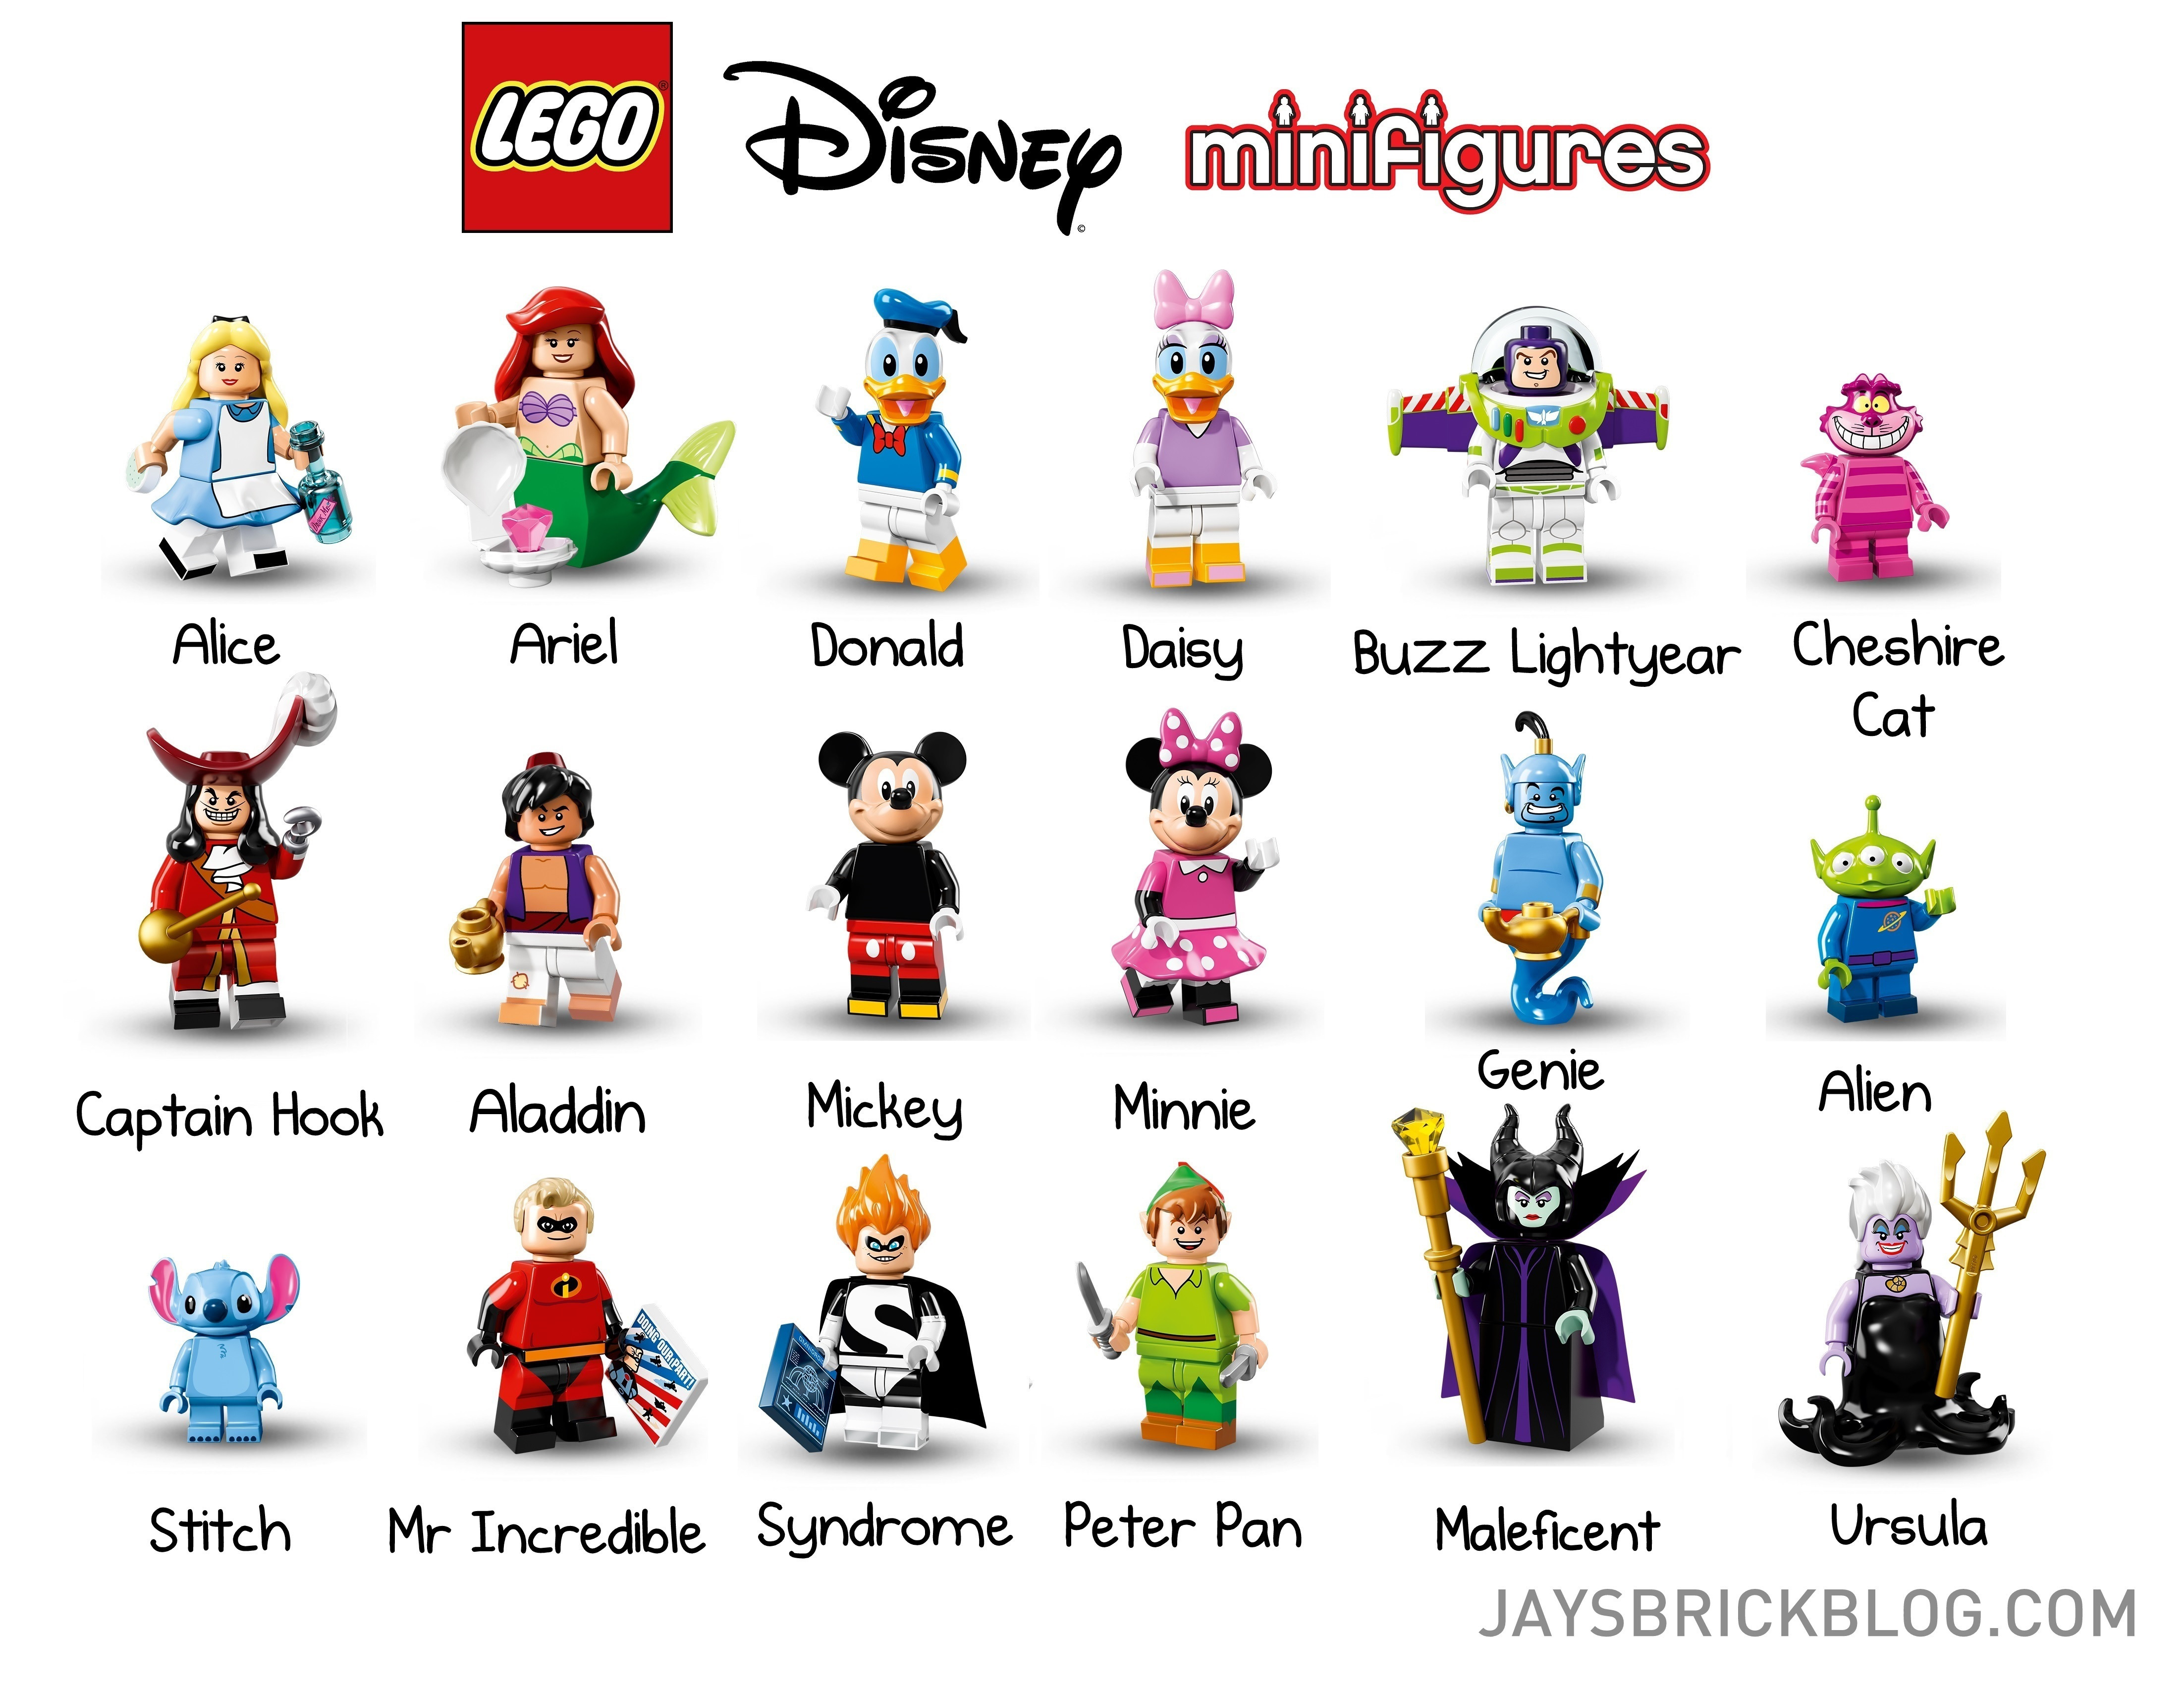 LEGO dévoile ses 18 premières mini figurines Disney